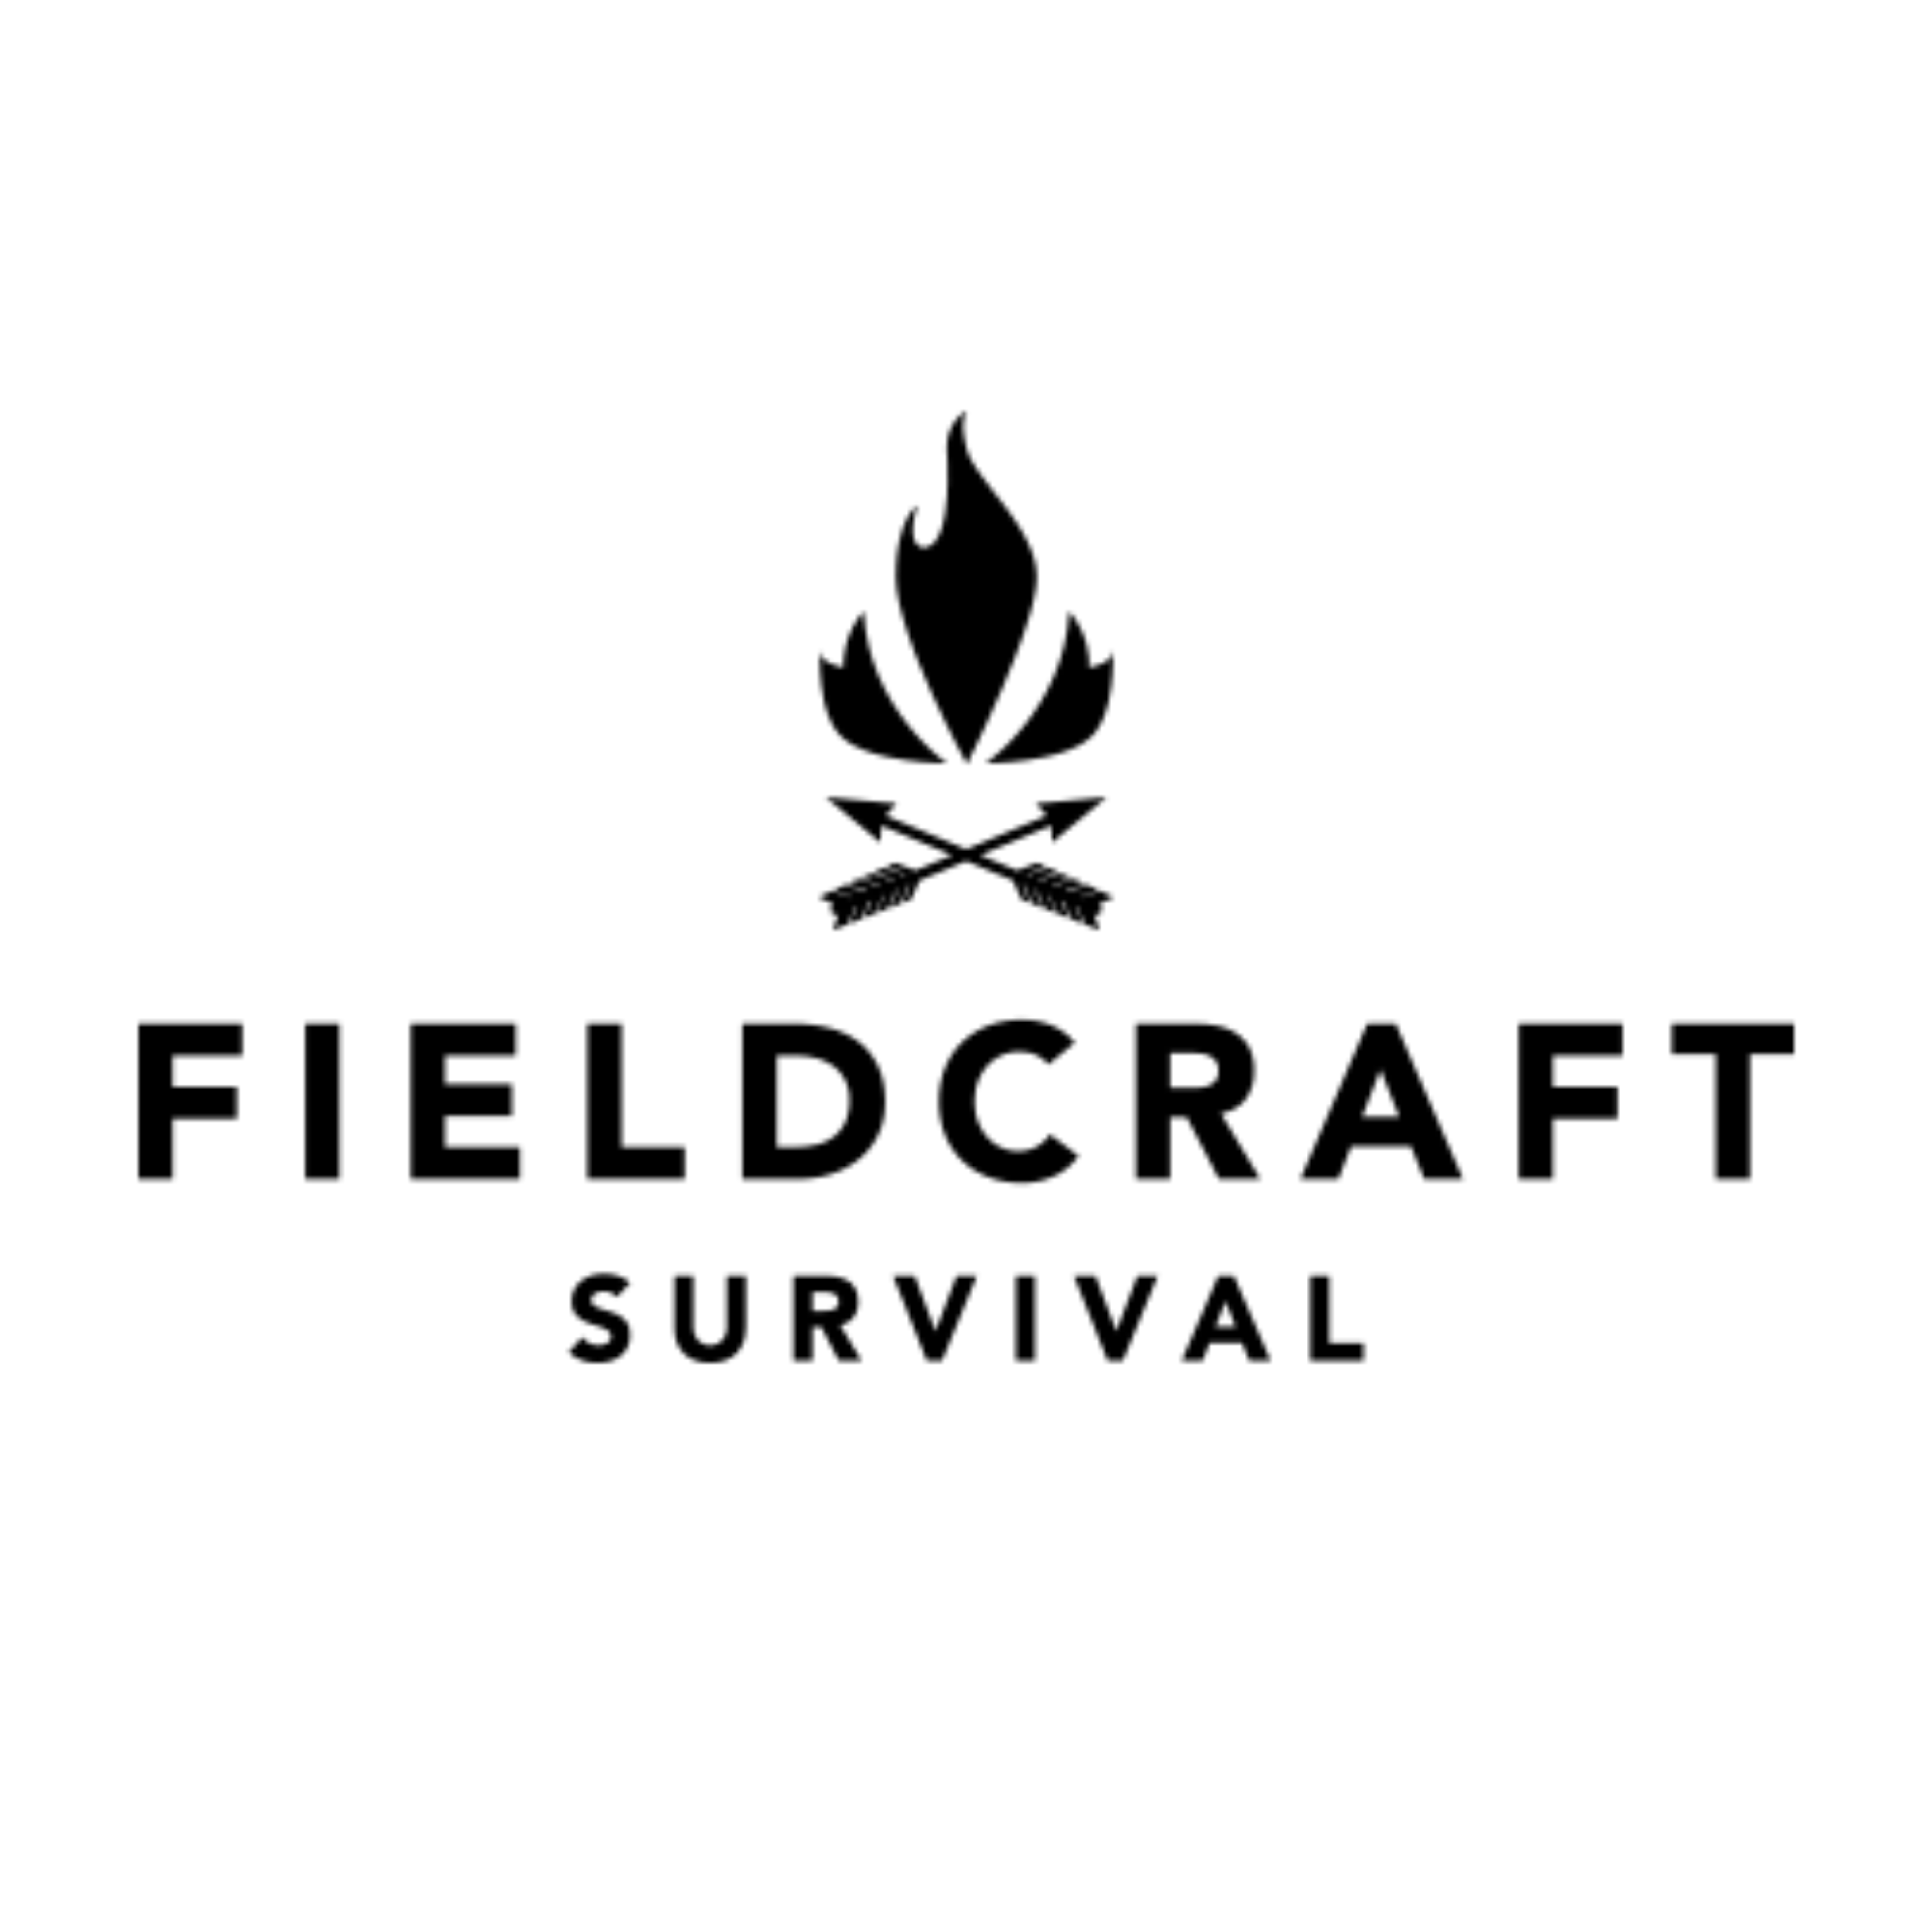 Fieldcraft Survival  Survival Gear & Training